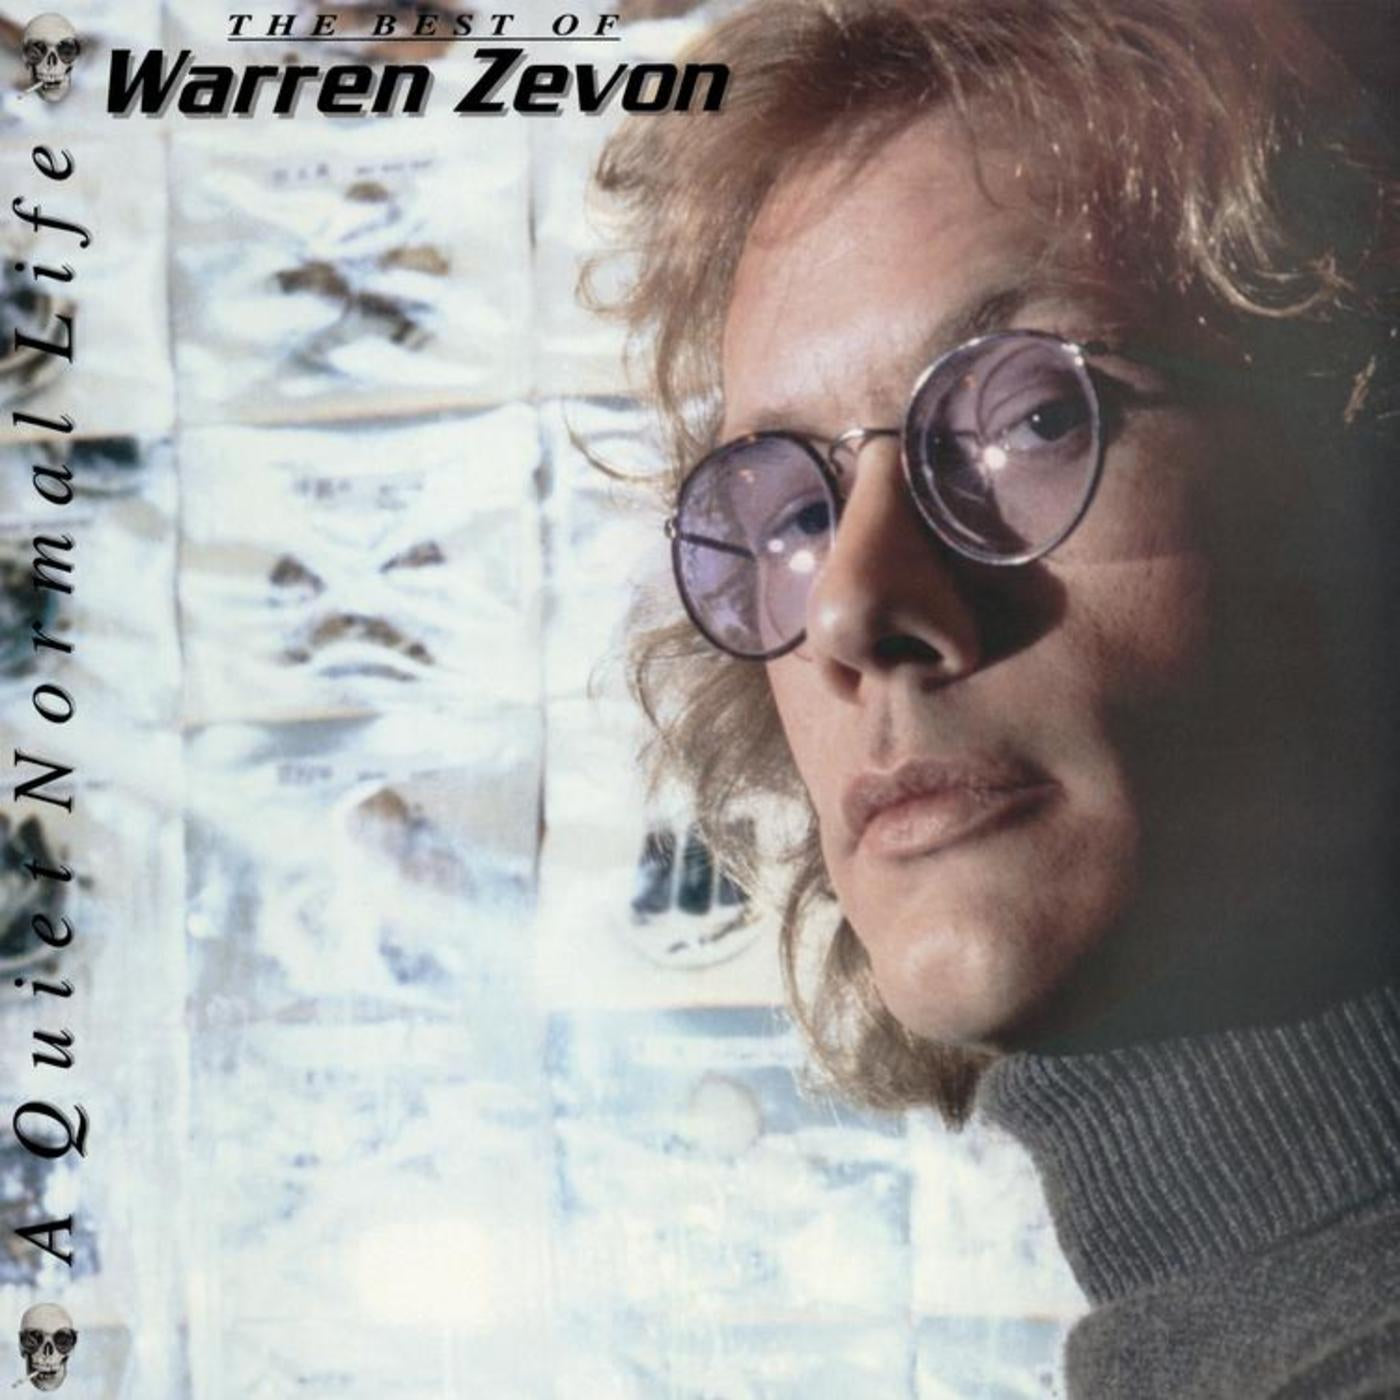 WARREN ZEVON - A QUIET NORMAL LIFE : THE BEST OF WARREN ZEVON